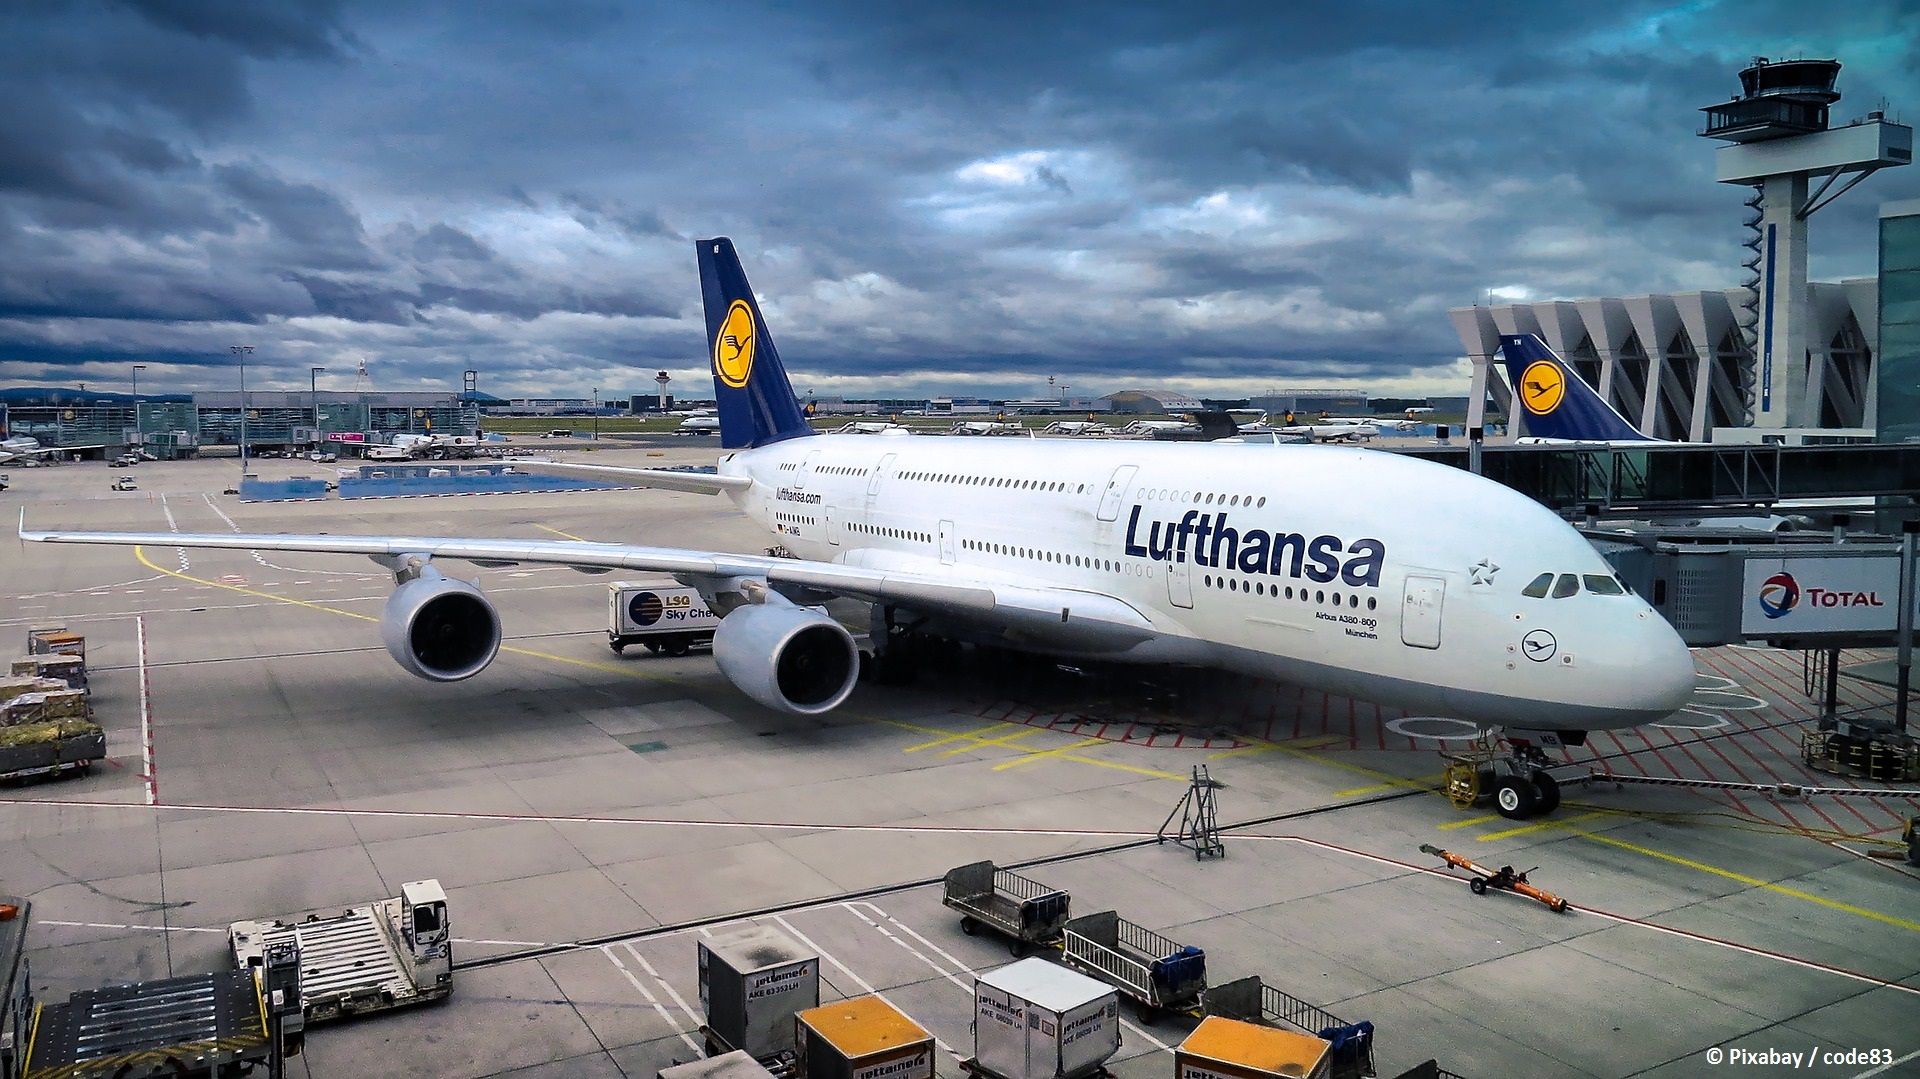 Lufthansa stutzt Ticketangebot im Sommer wegen Flugchaos